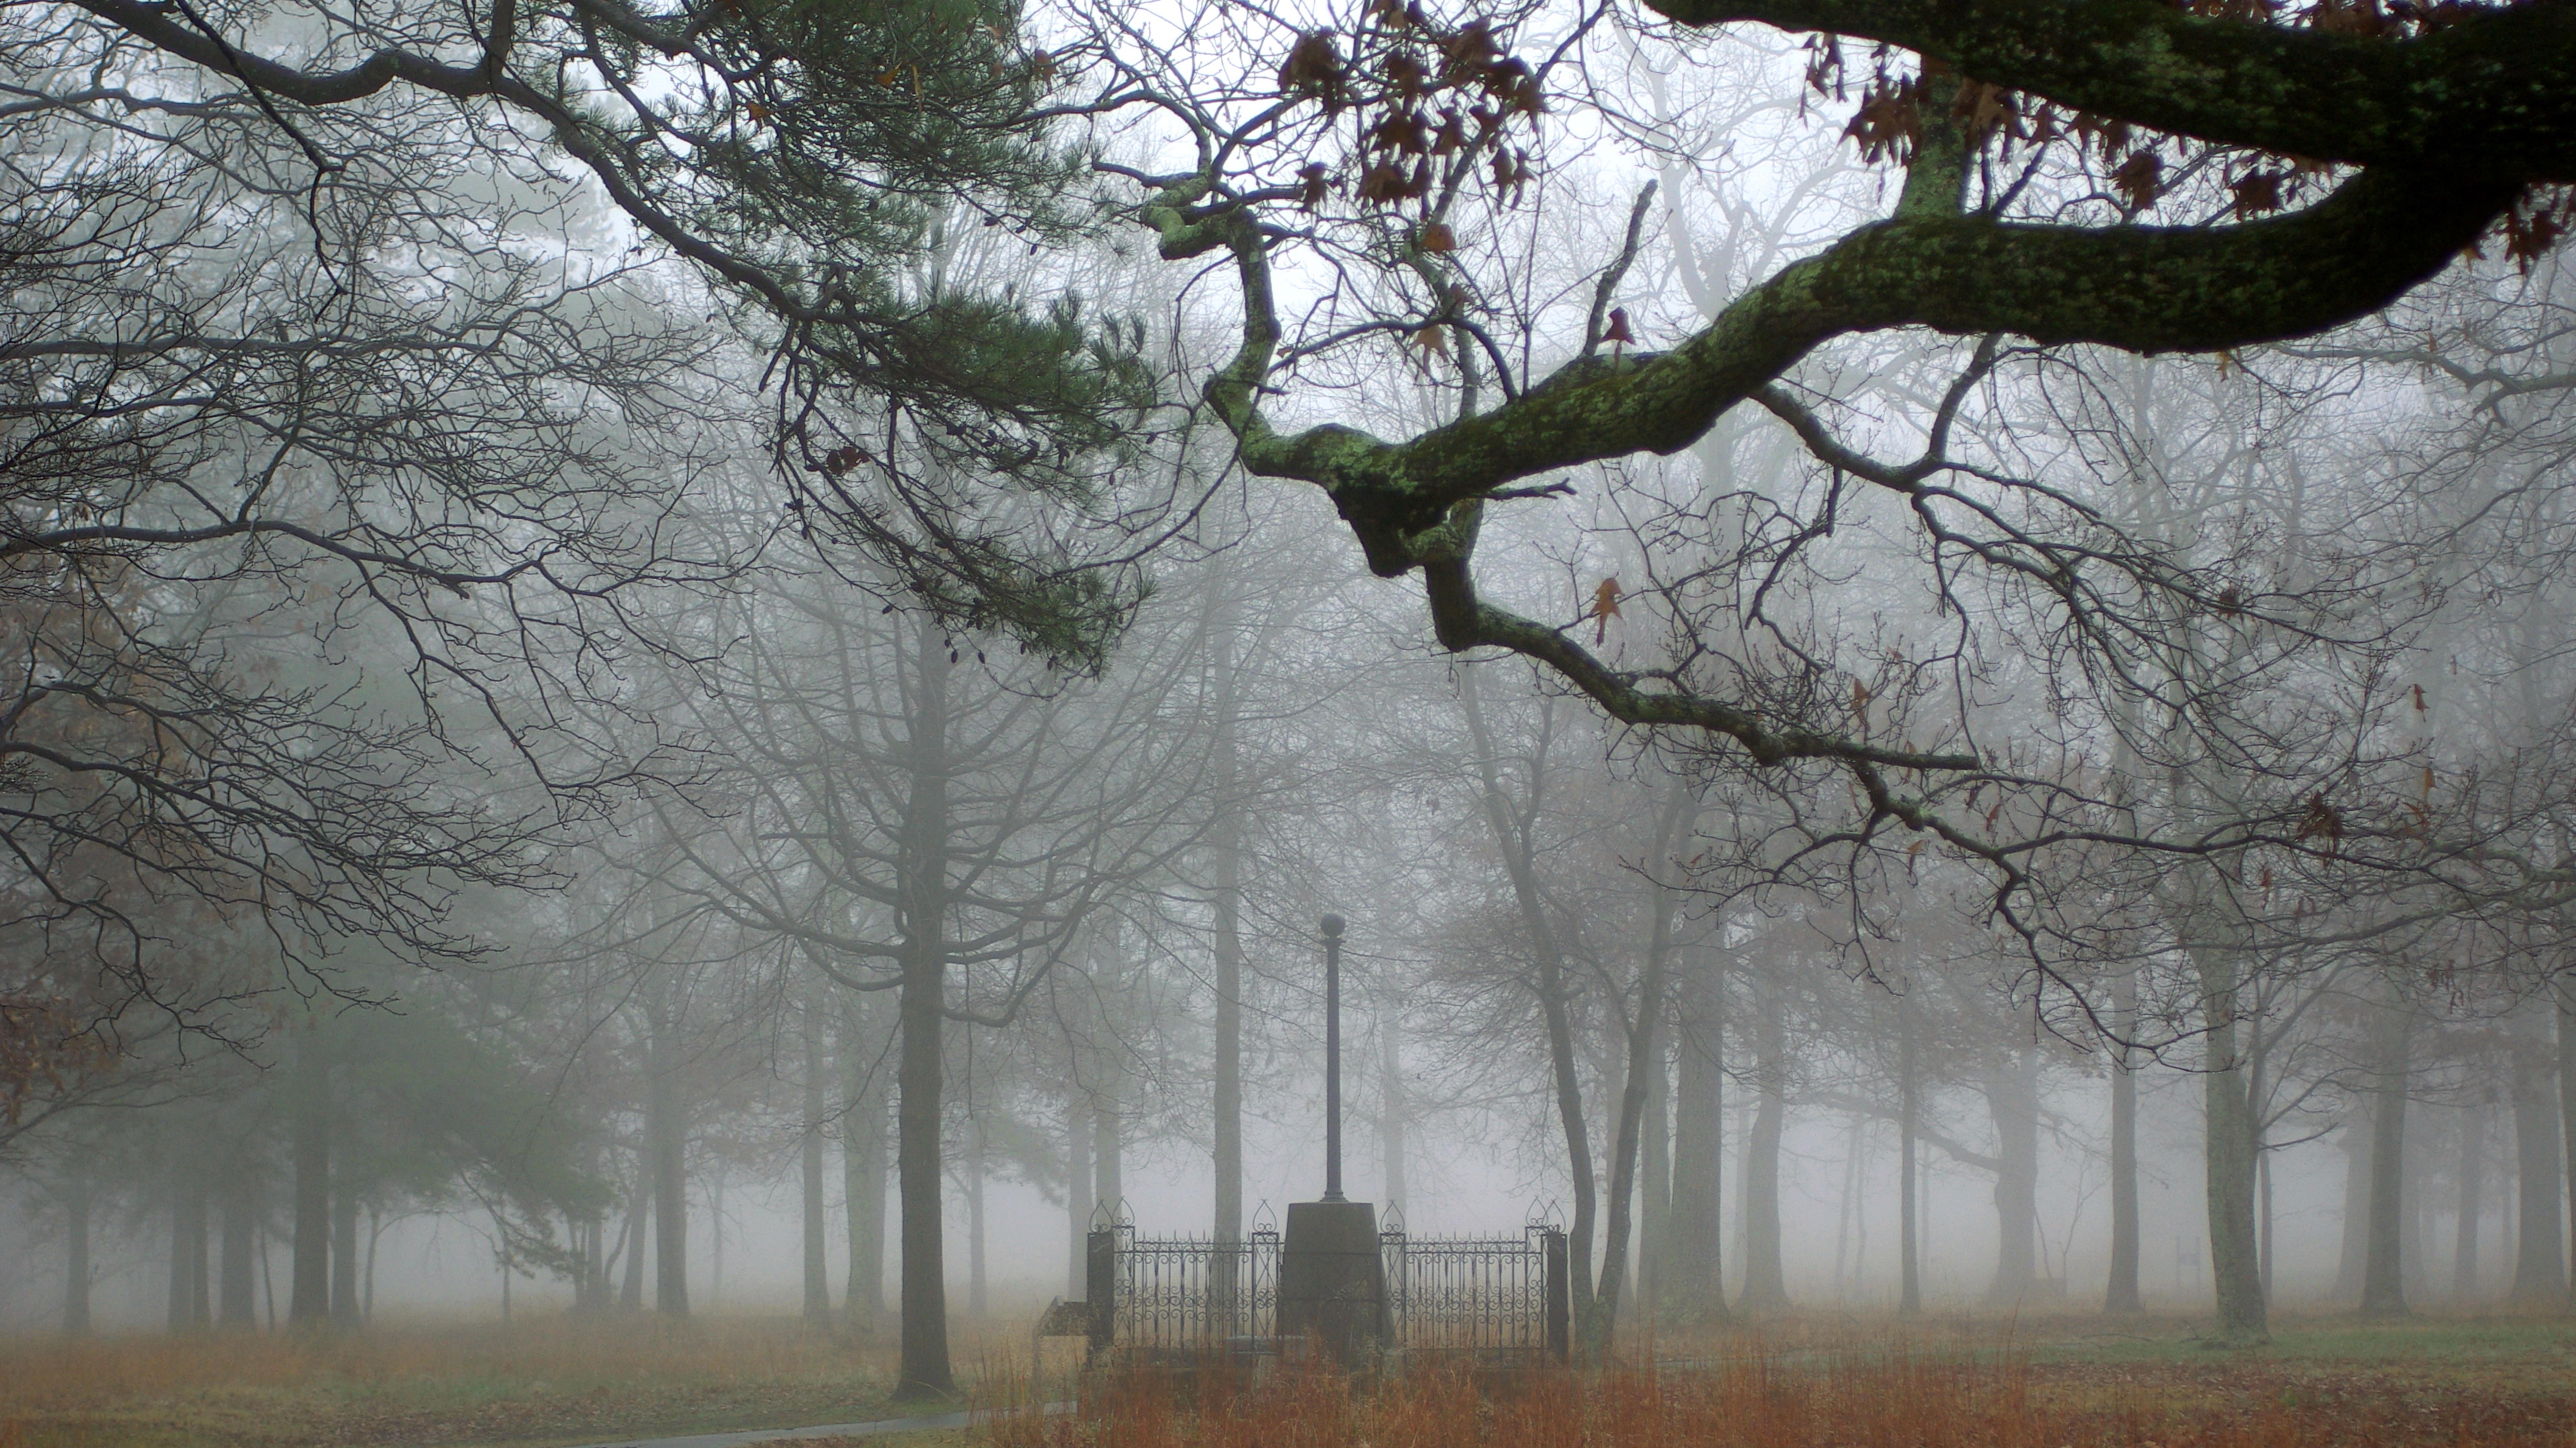 Fog shrouds the 1856 Washington Light Infantry Monument